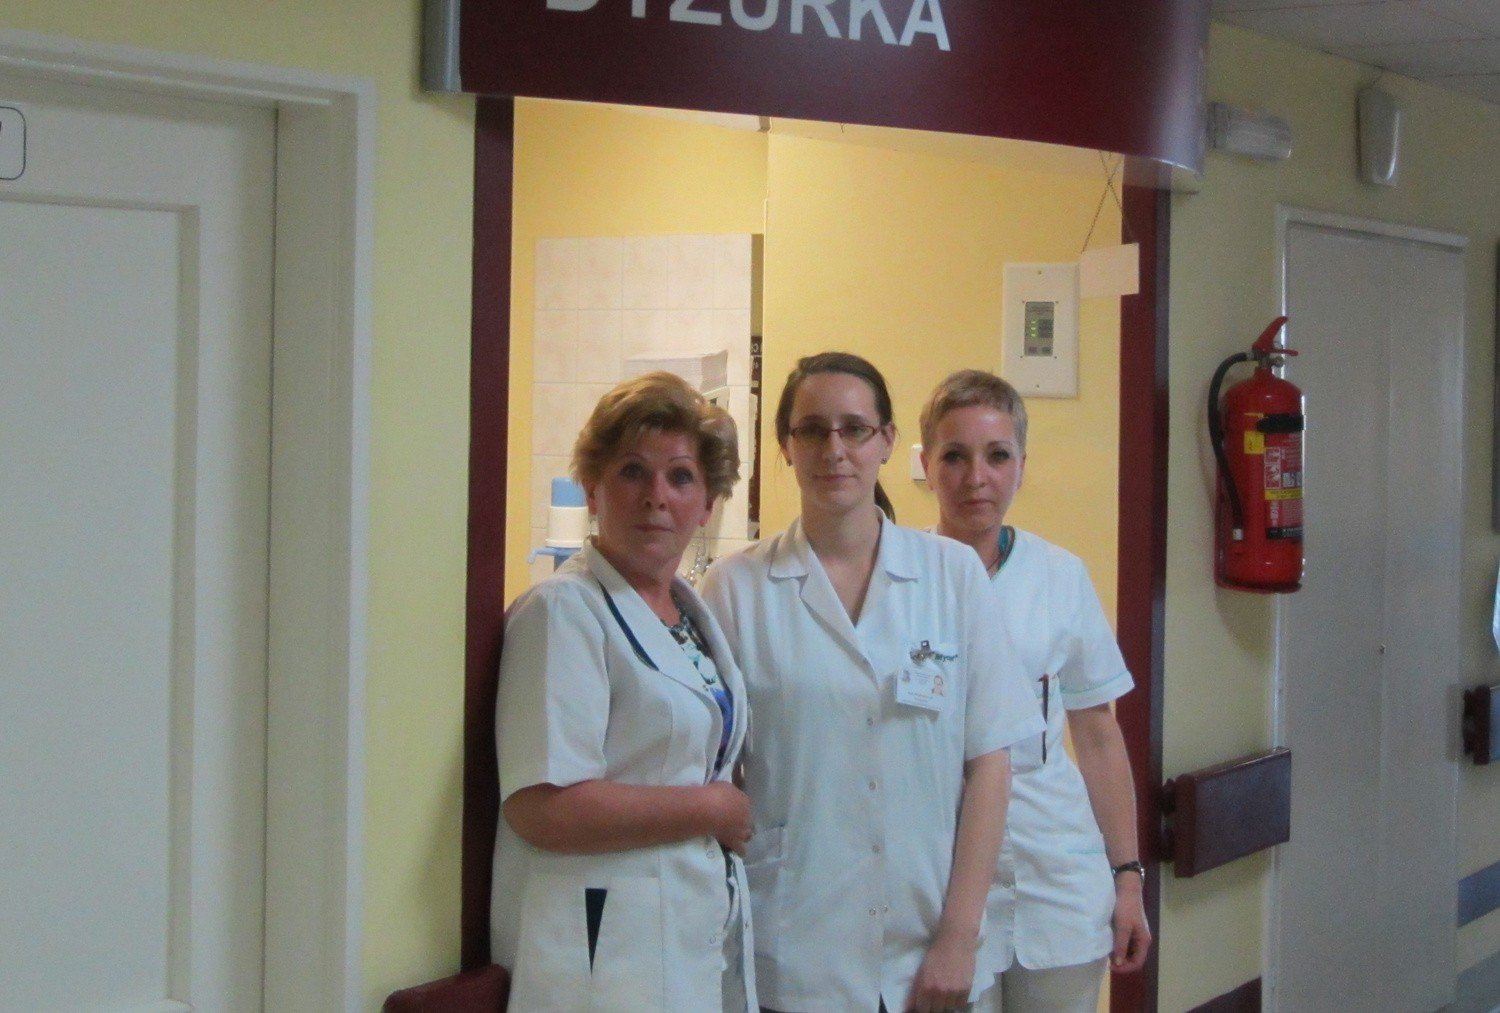 Brakuje pielęgniarek: Za kilka lat zostaniemy bez opieki w szpitalach? |  Głos Wielkopolski